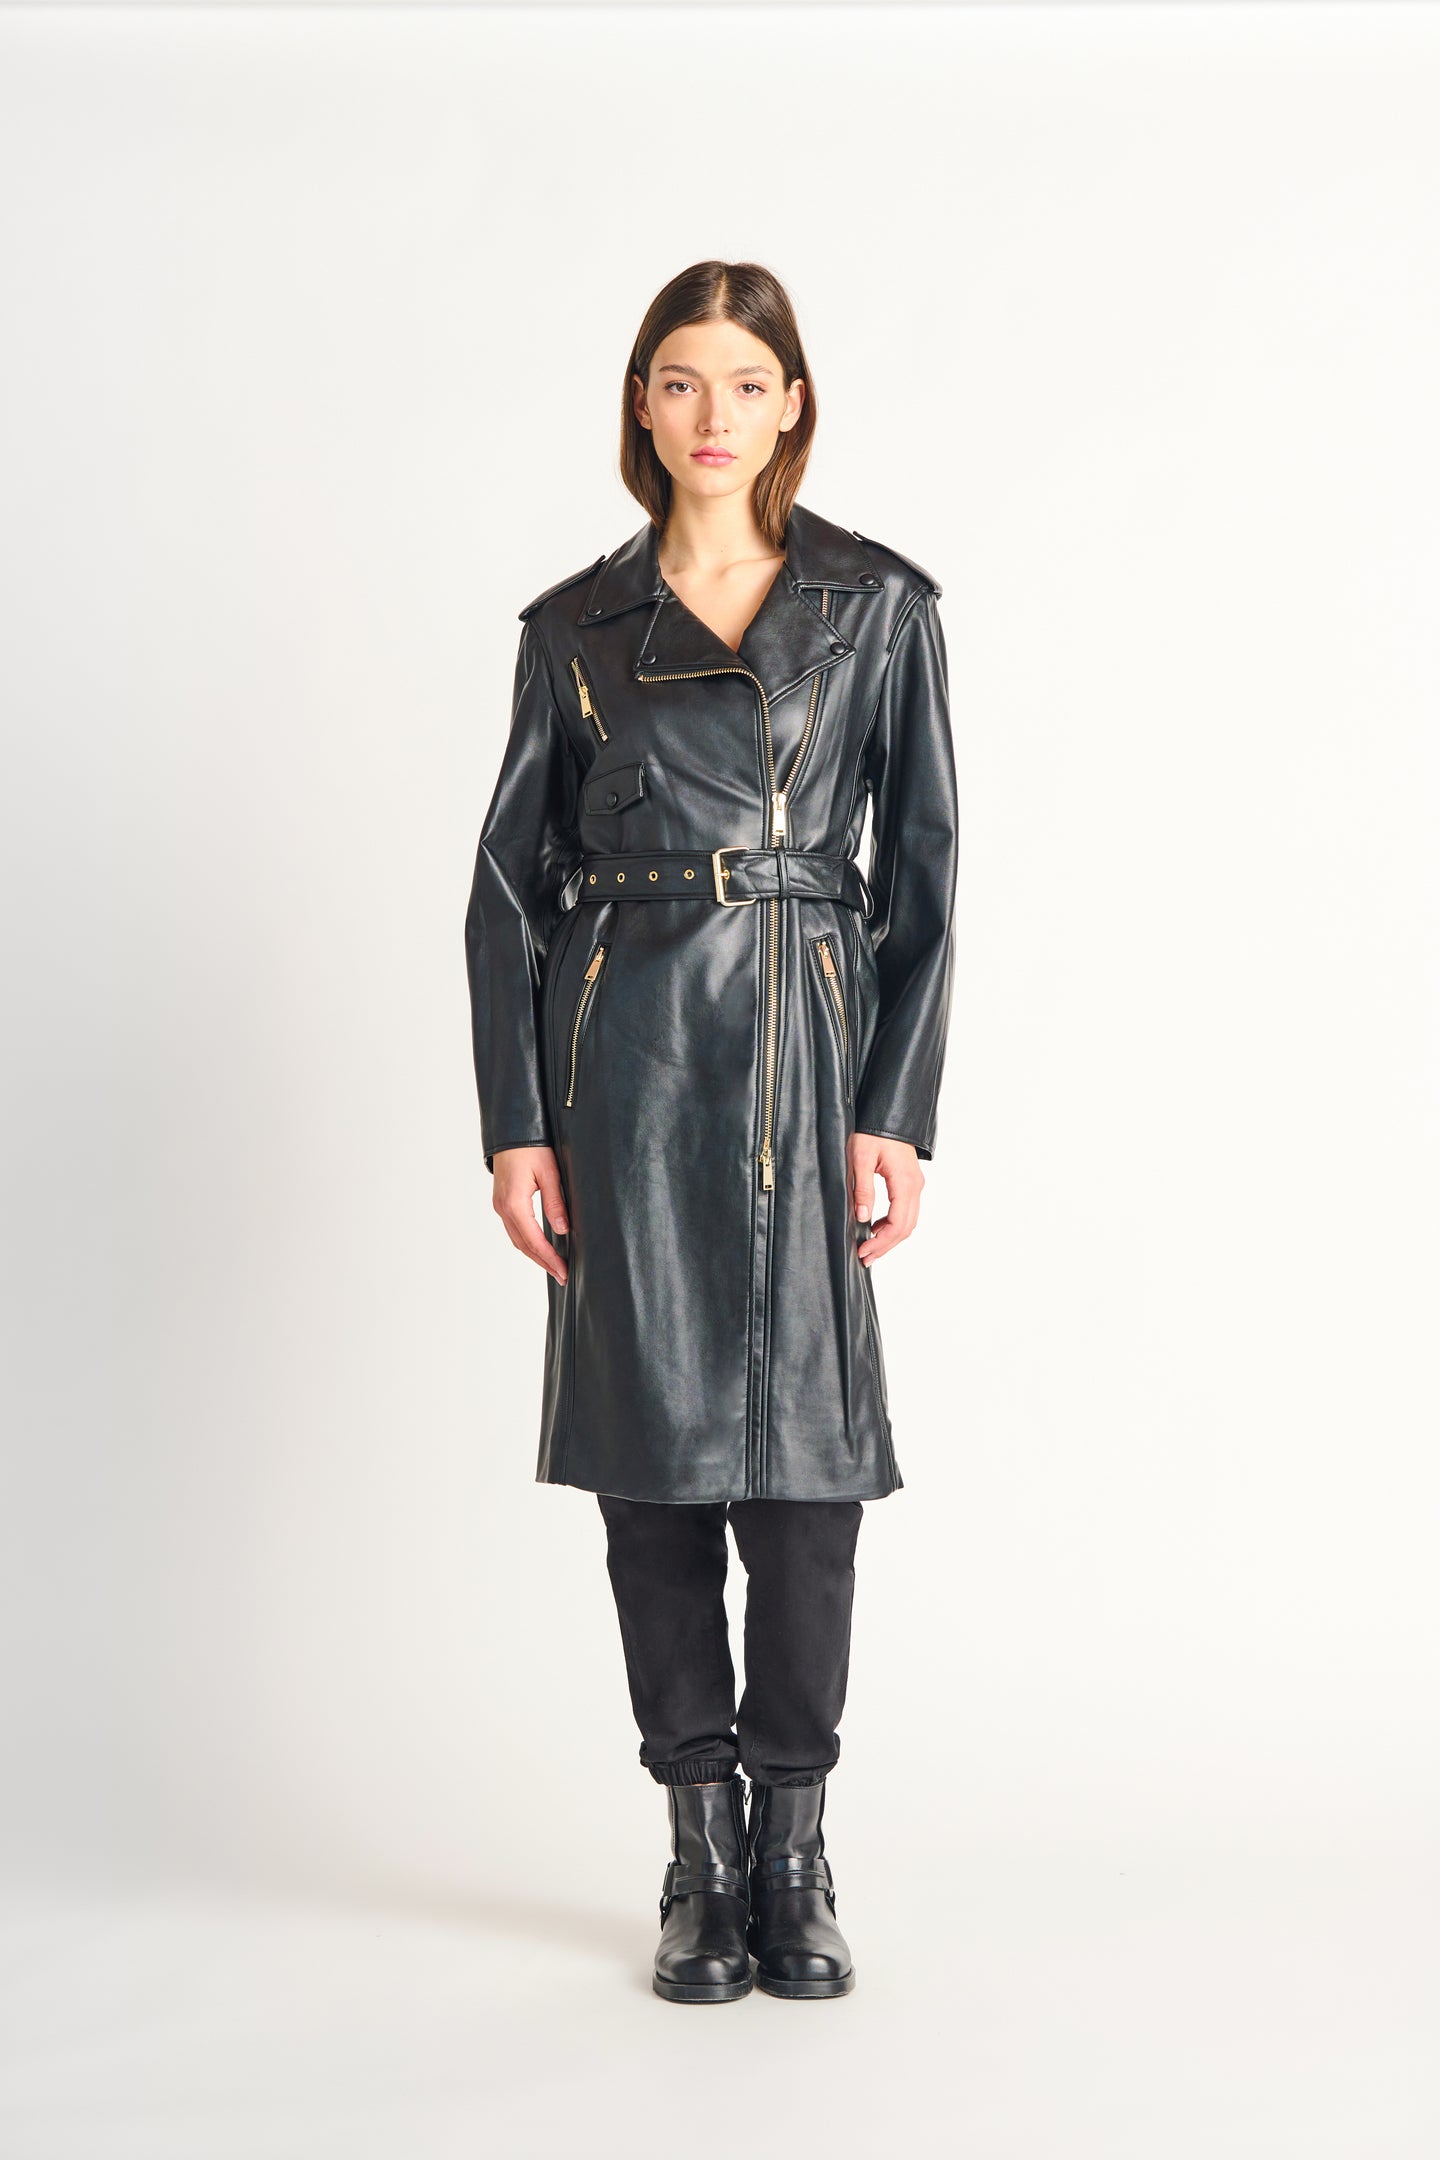 Manteau cuirette Dex - 2229009D-noir